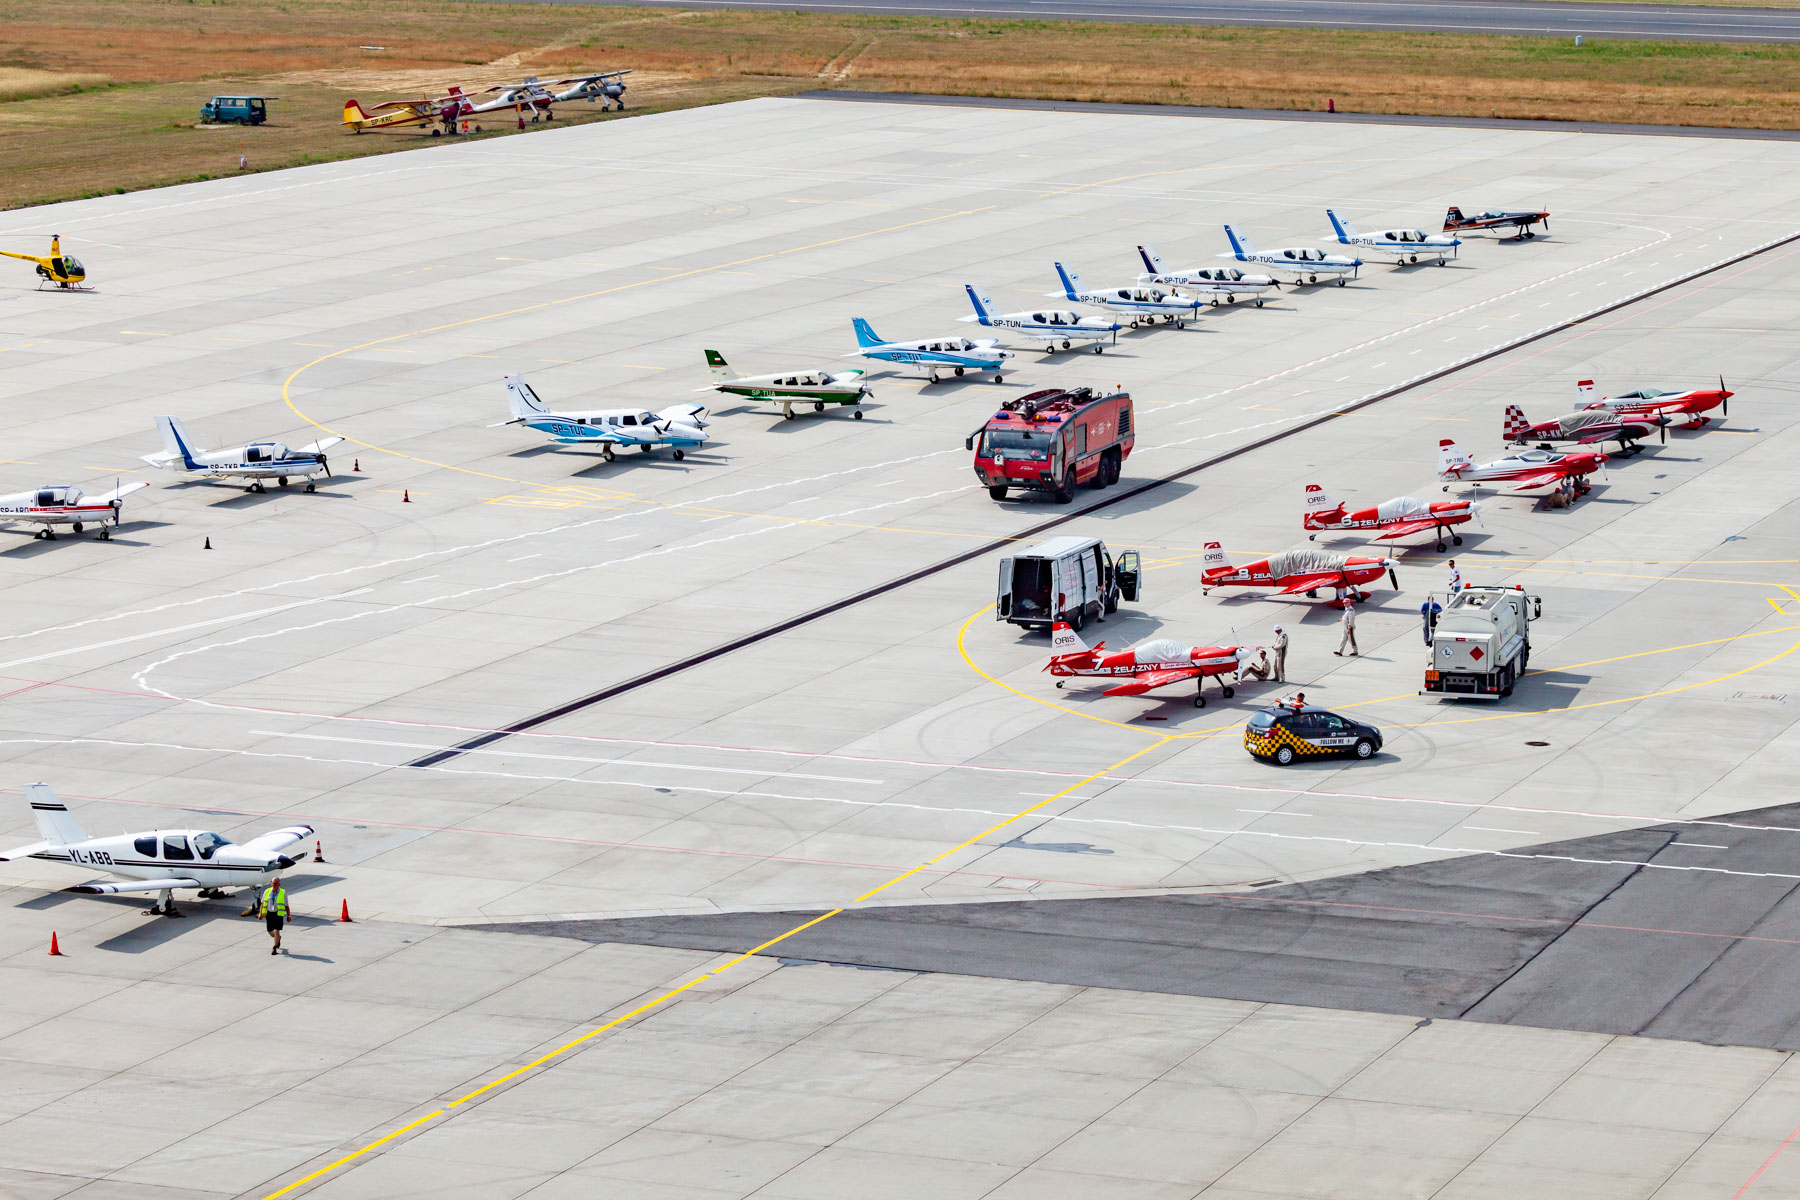 Kilkanaście samolotów stojących na płycie lotniska w dwóch rzędach. Między nimi jedzie czerwony wóz strażacki.